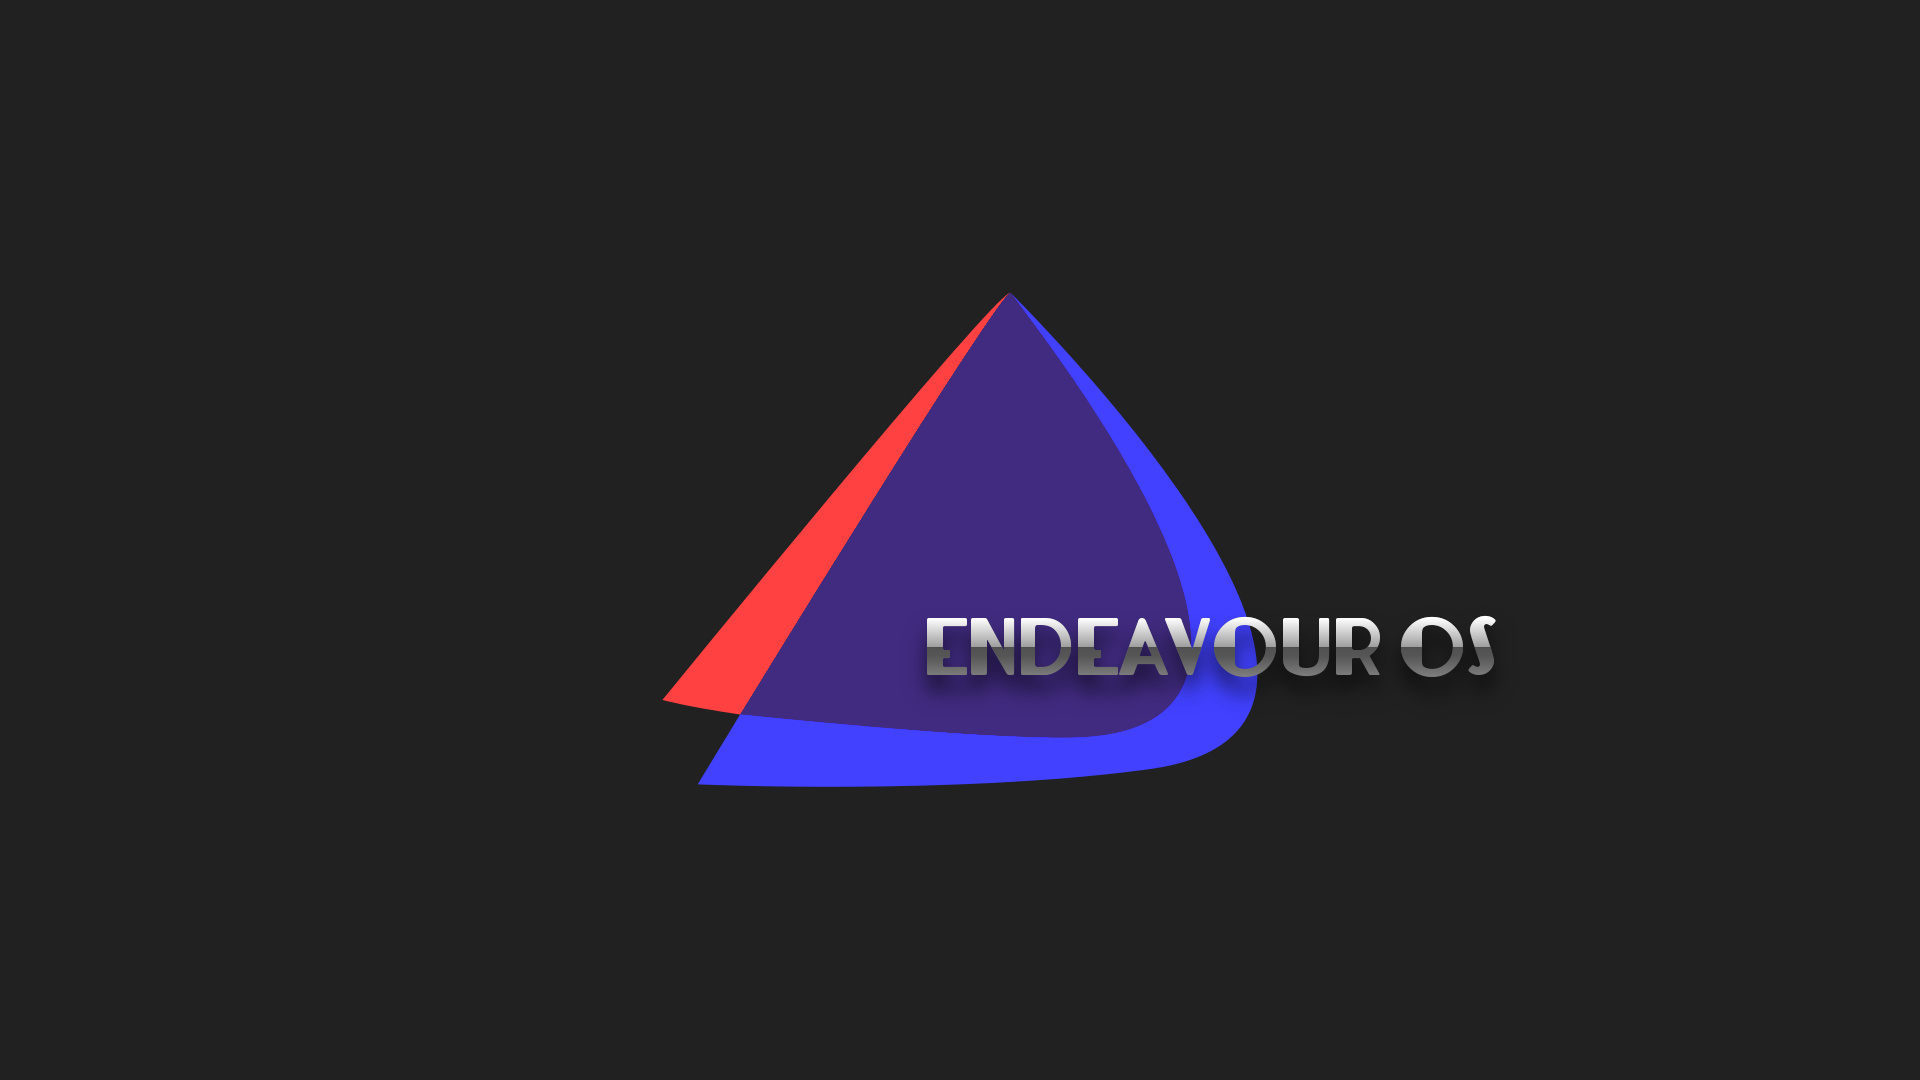 endeavour-os-flat-04